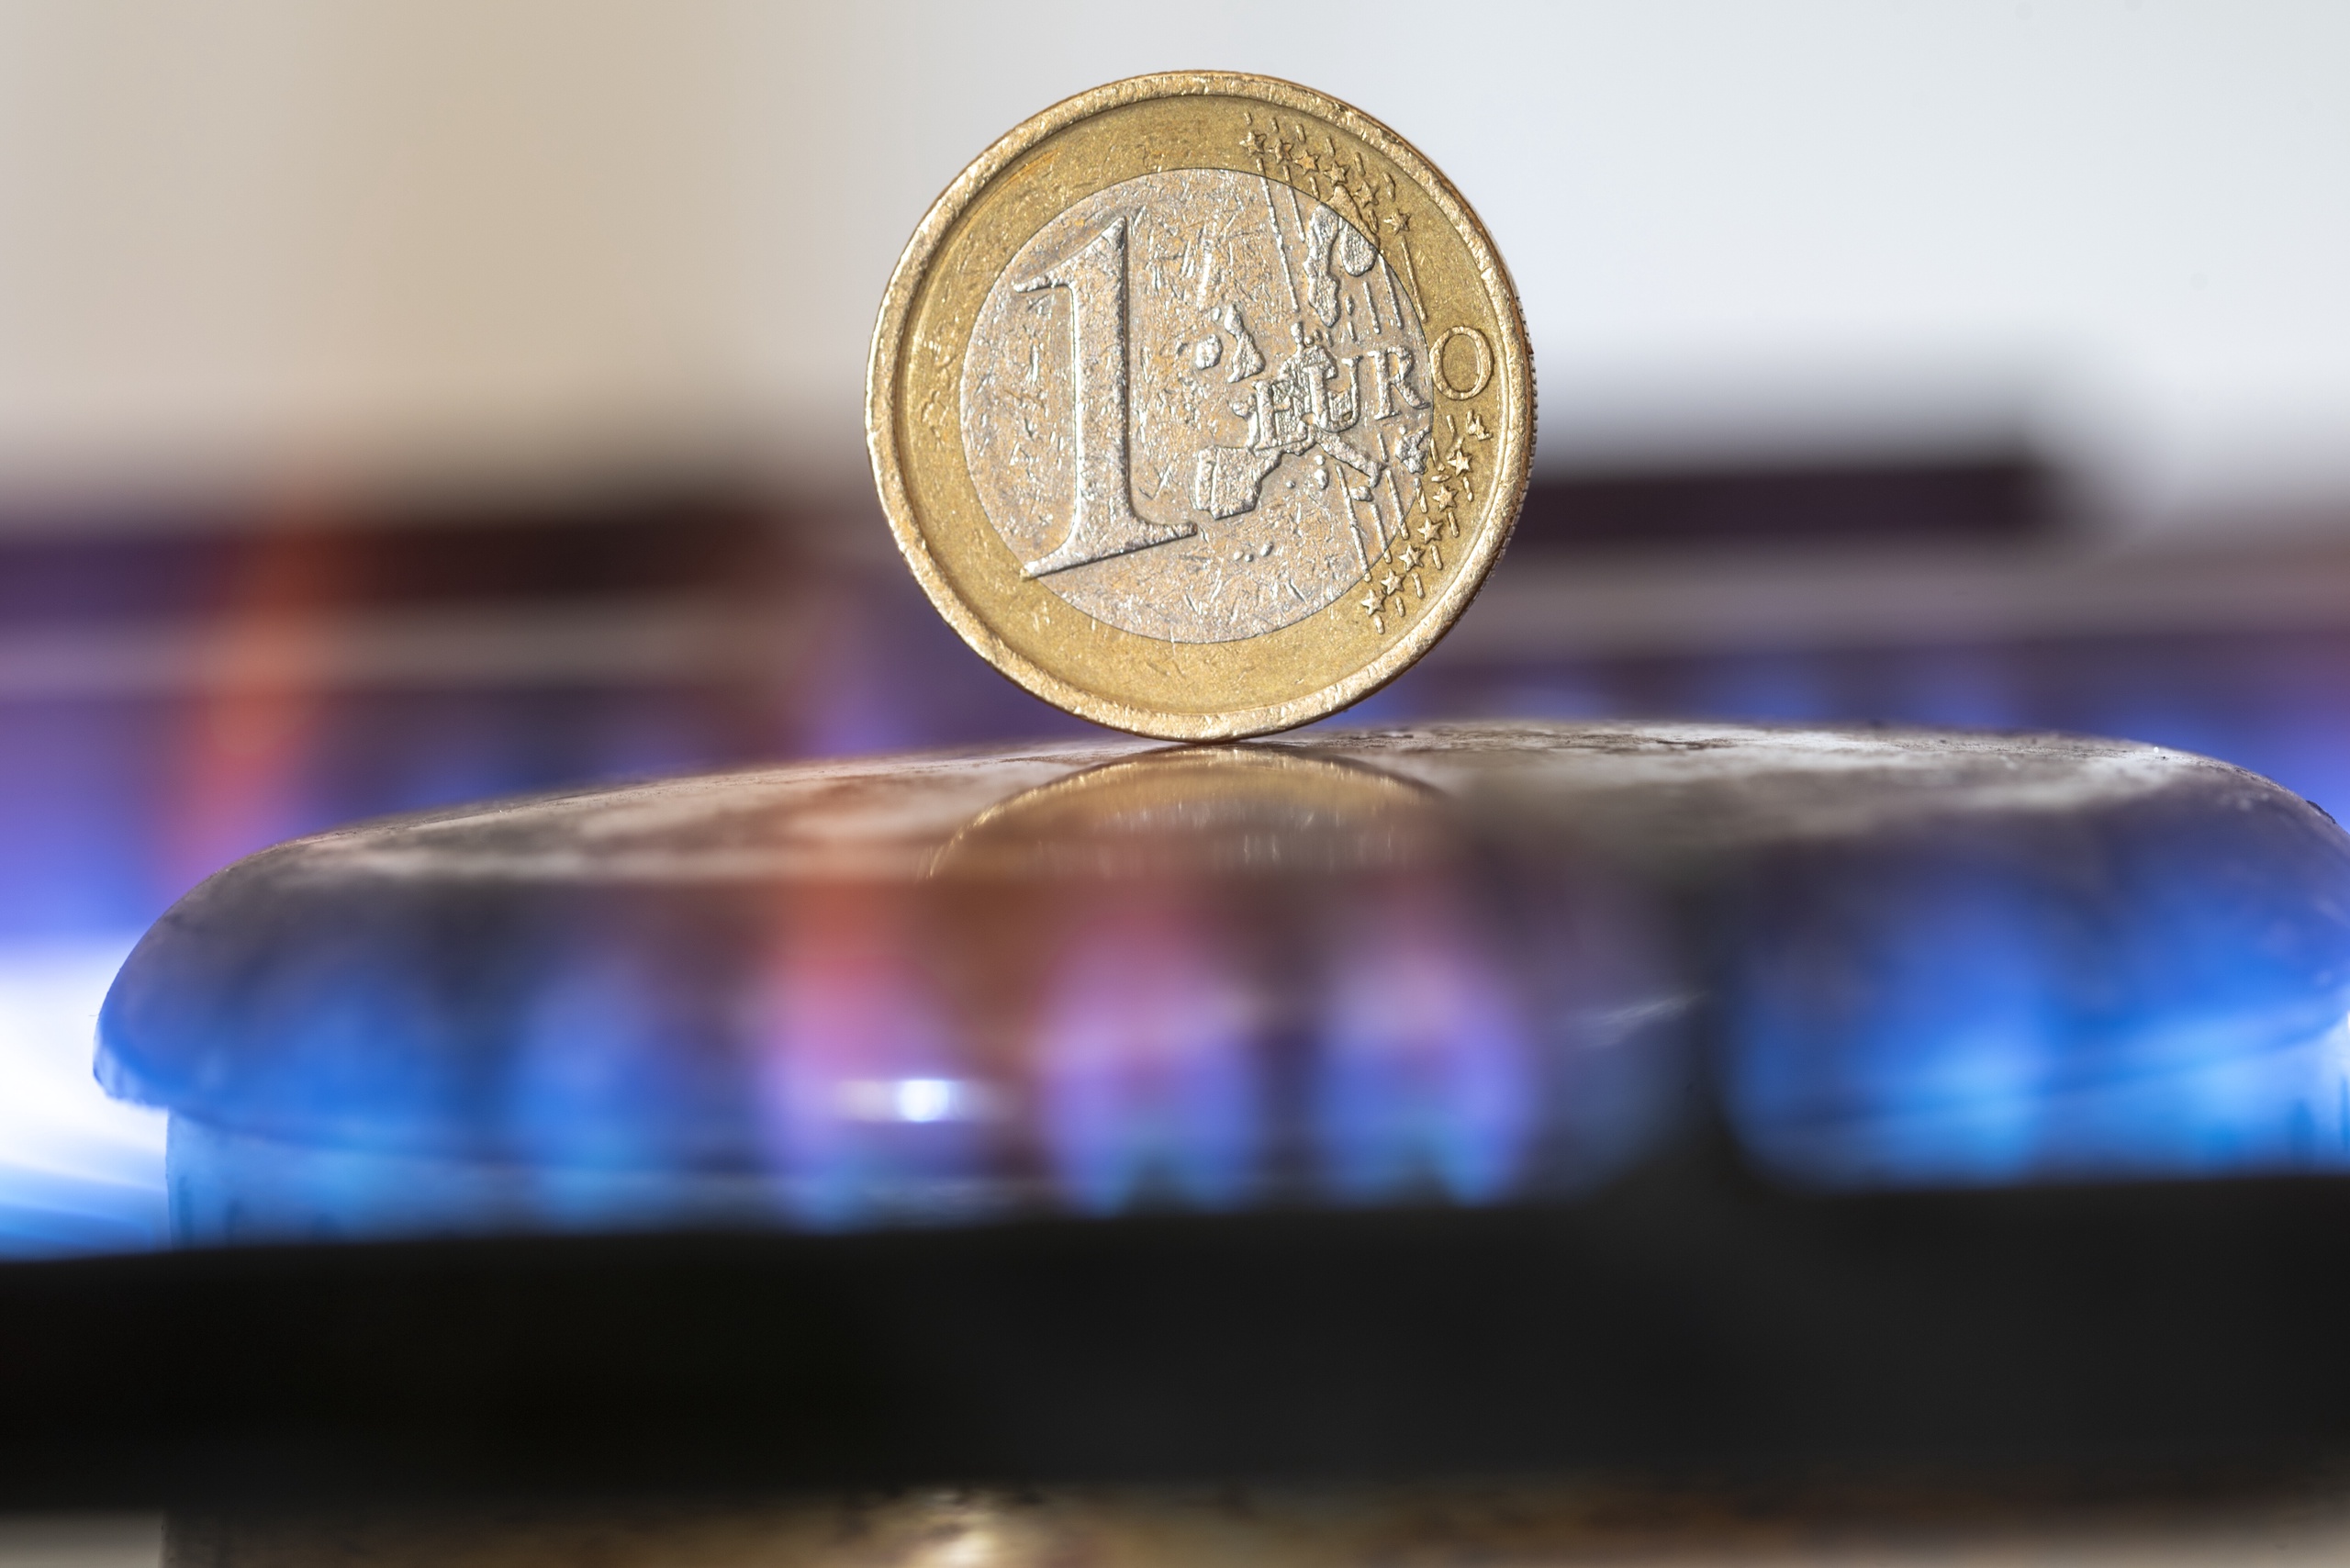 De Europese gasprijs is gezakt naar het laagste niveau in bijna twee jaar. De prijs van een megawattuur gas daalde gisteren met bijna negen procent naar 25,35 euro, maar helemaal uit de problemen zijn we nog niet, denkt energie-expert Jilles van den Beukel van het Den Haag Centrum voor Strategische Studies.